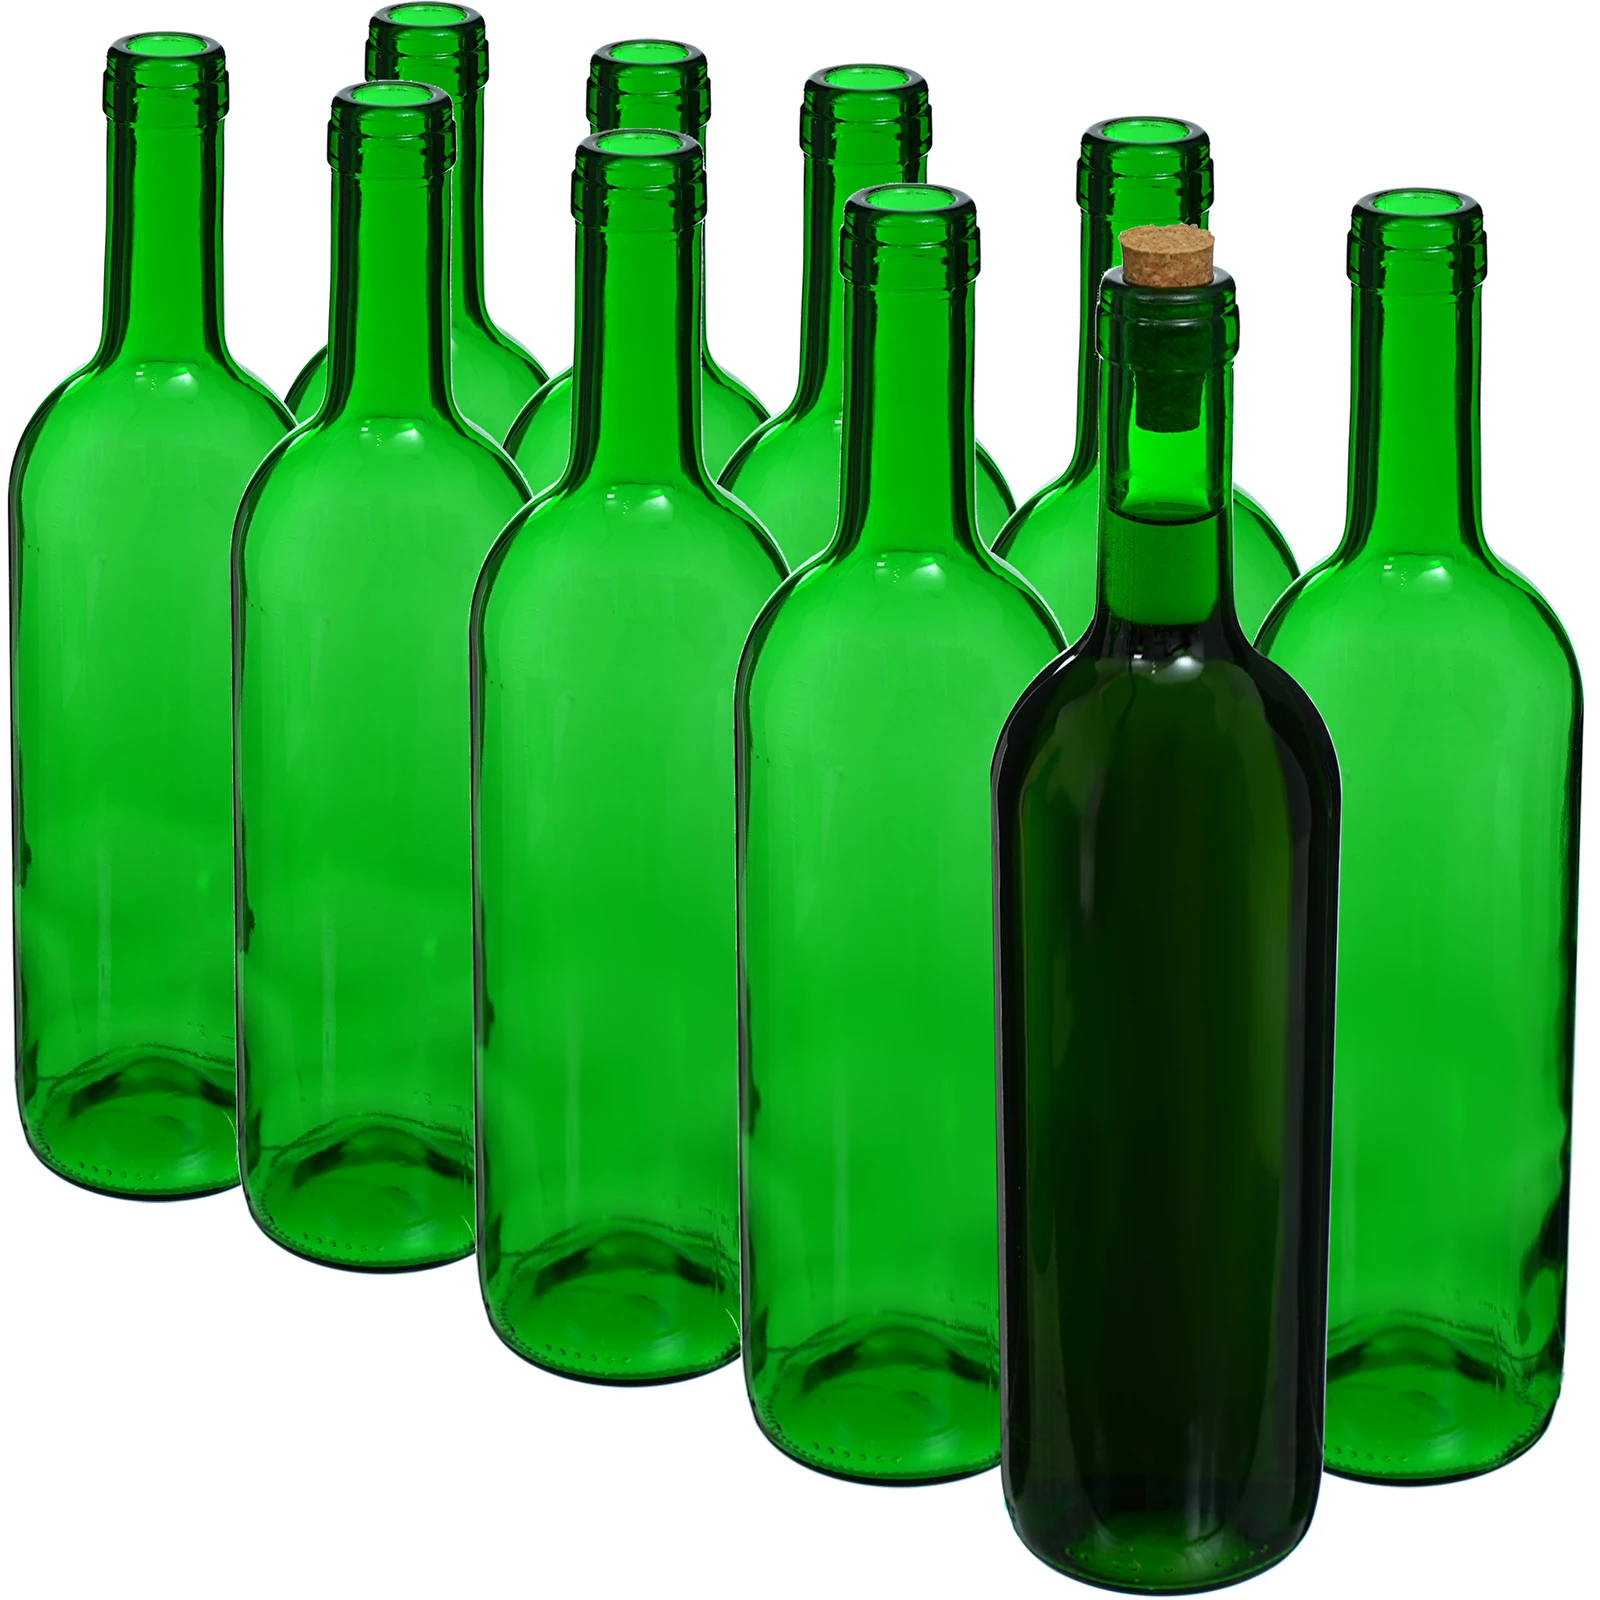 Bordeaux Weinflasche 0.75ml grün - Packung mit 10 Stk. symbol:631487